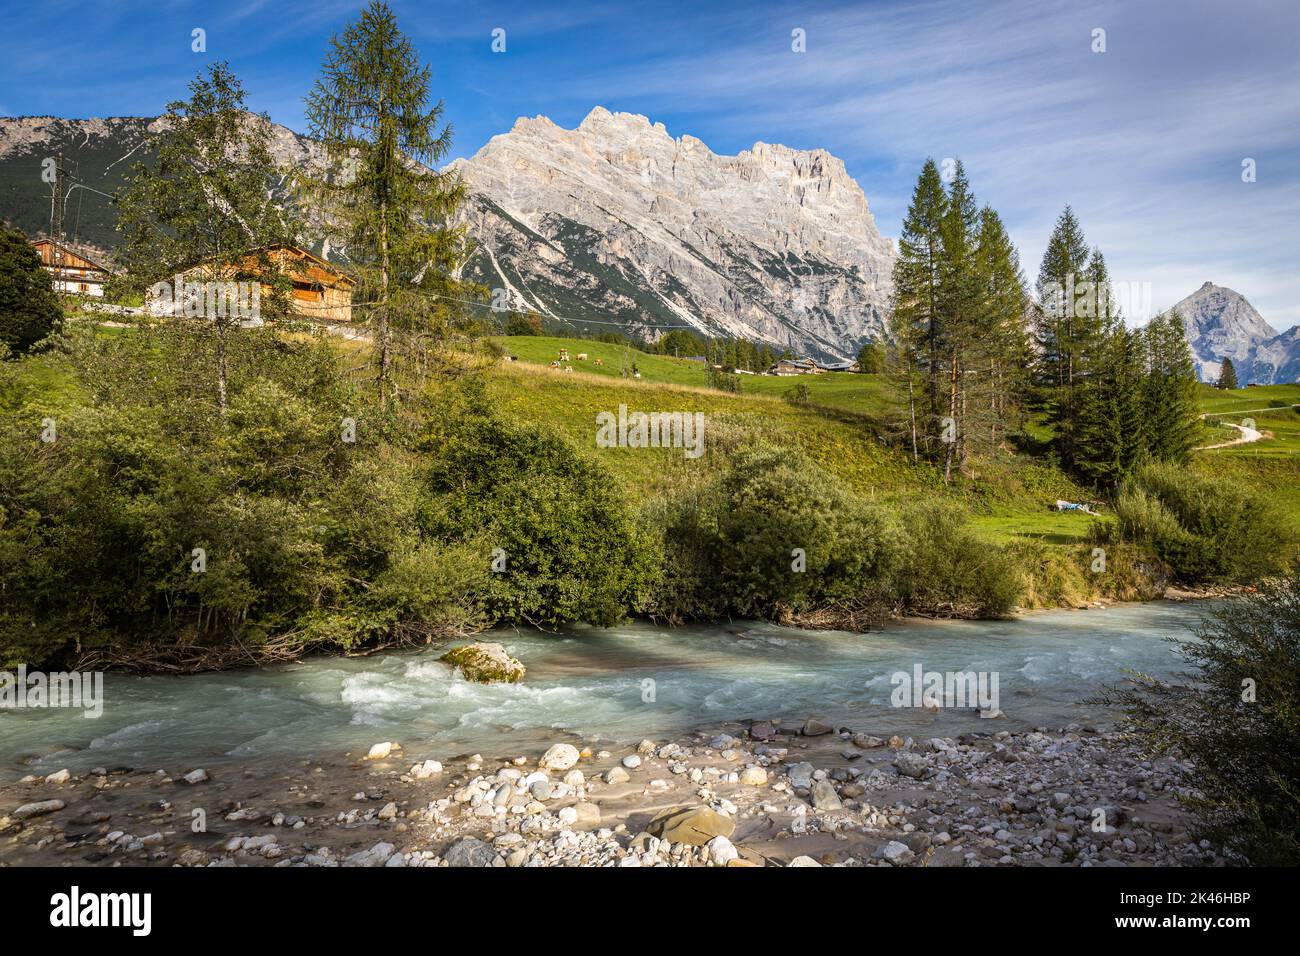 Cortina d'Ampezzo, Italy Stock Photo